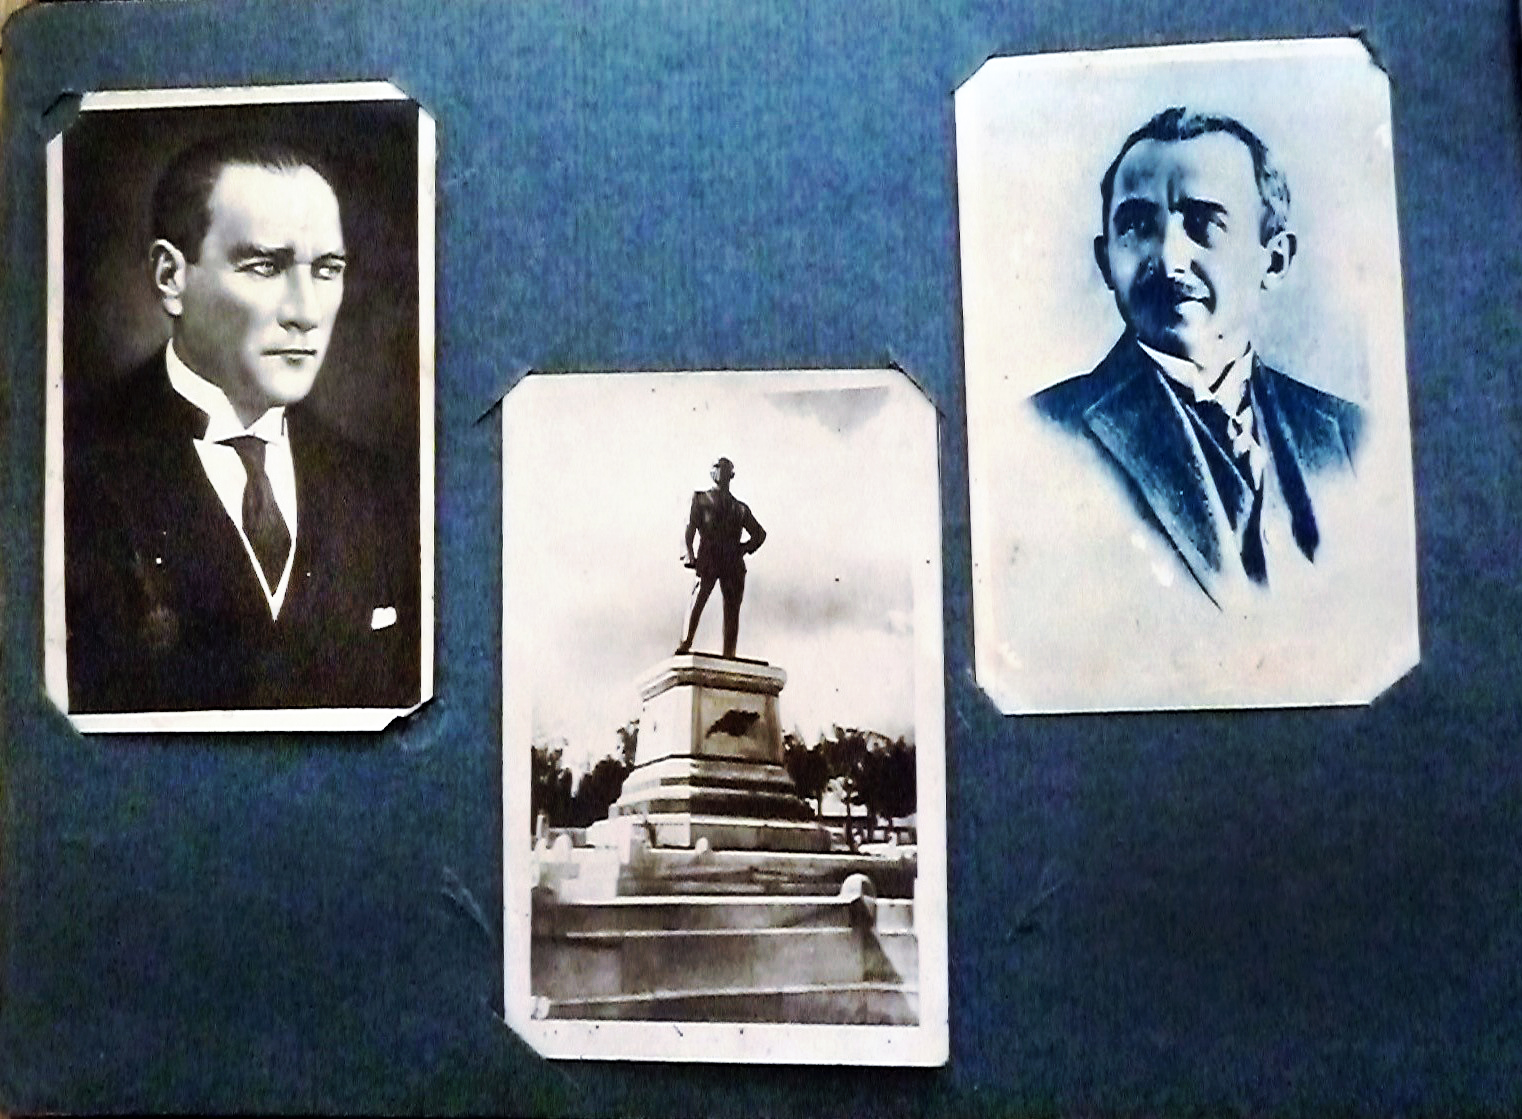 Figure 4 : Extrait d'un album de photographie de la famille Oflas : on y voit les portraits de Mustafa Kemal [Atatürk] et d'İsmet [İnönü] au milieu desquels se trouve la photographie de la statue de Mustafa Kemal à Sarayburnu. (Photos de la famille Oflas, en possession de son fils Tarık Oflas).